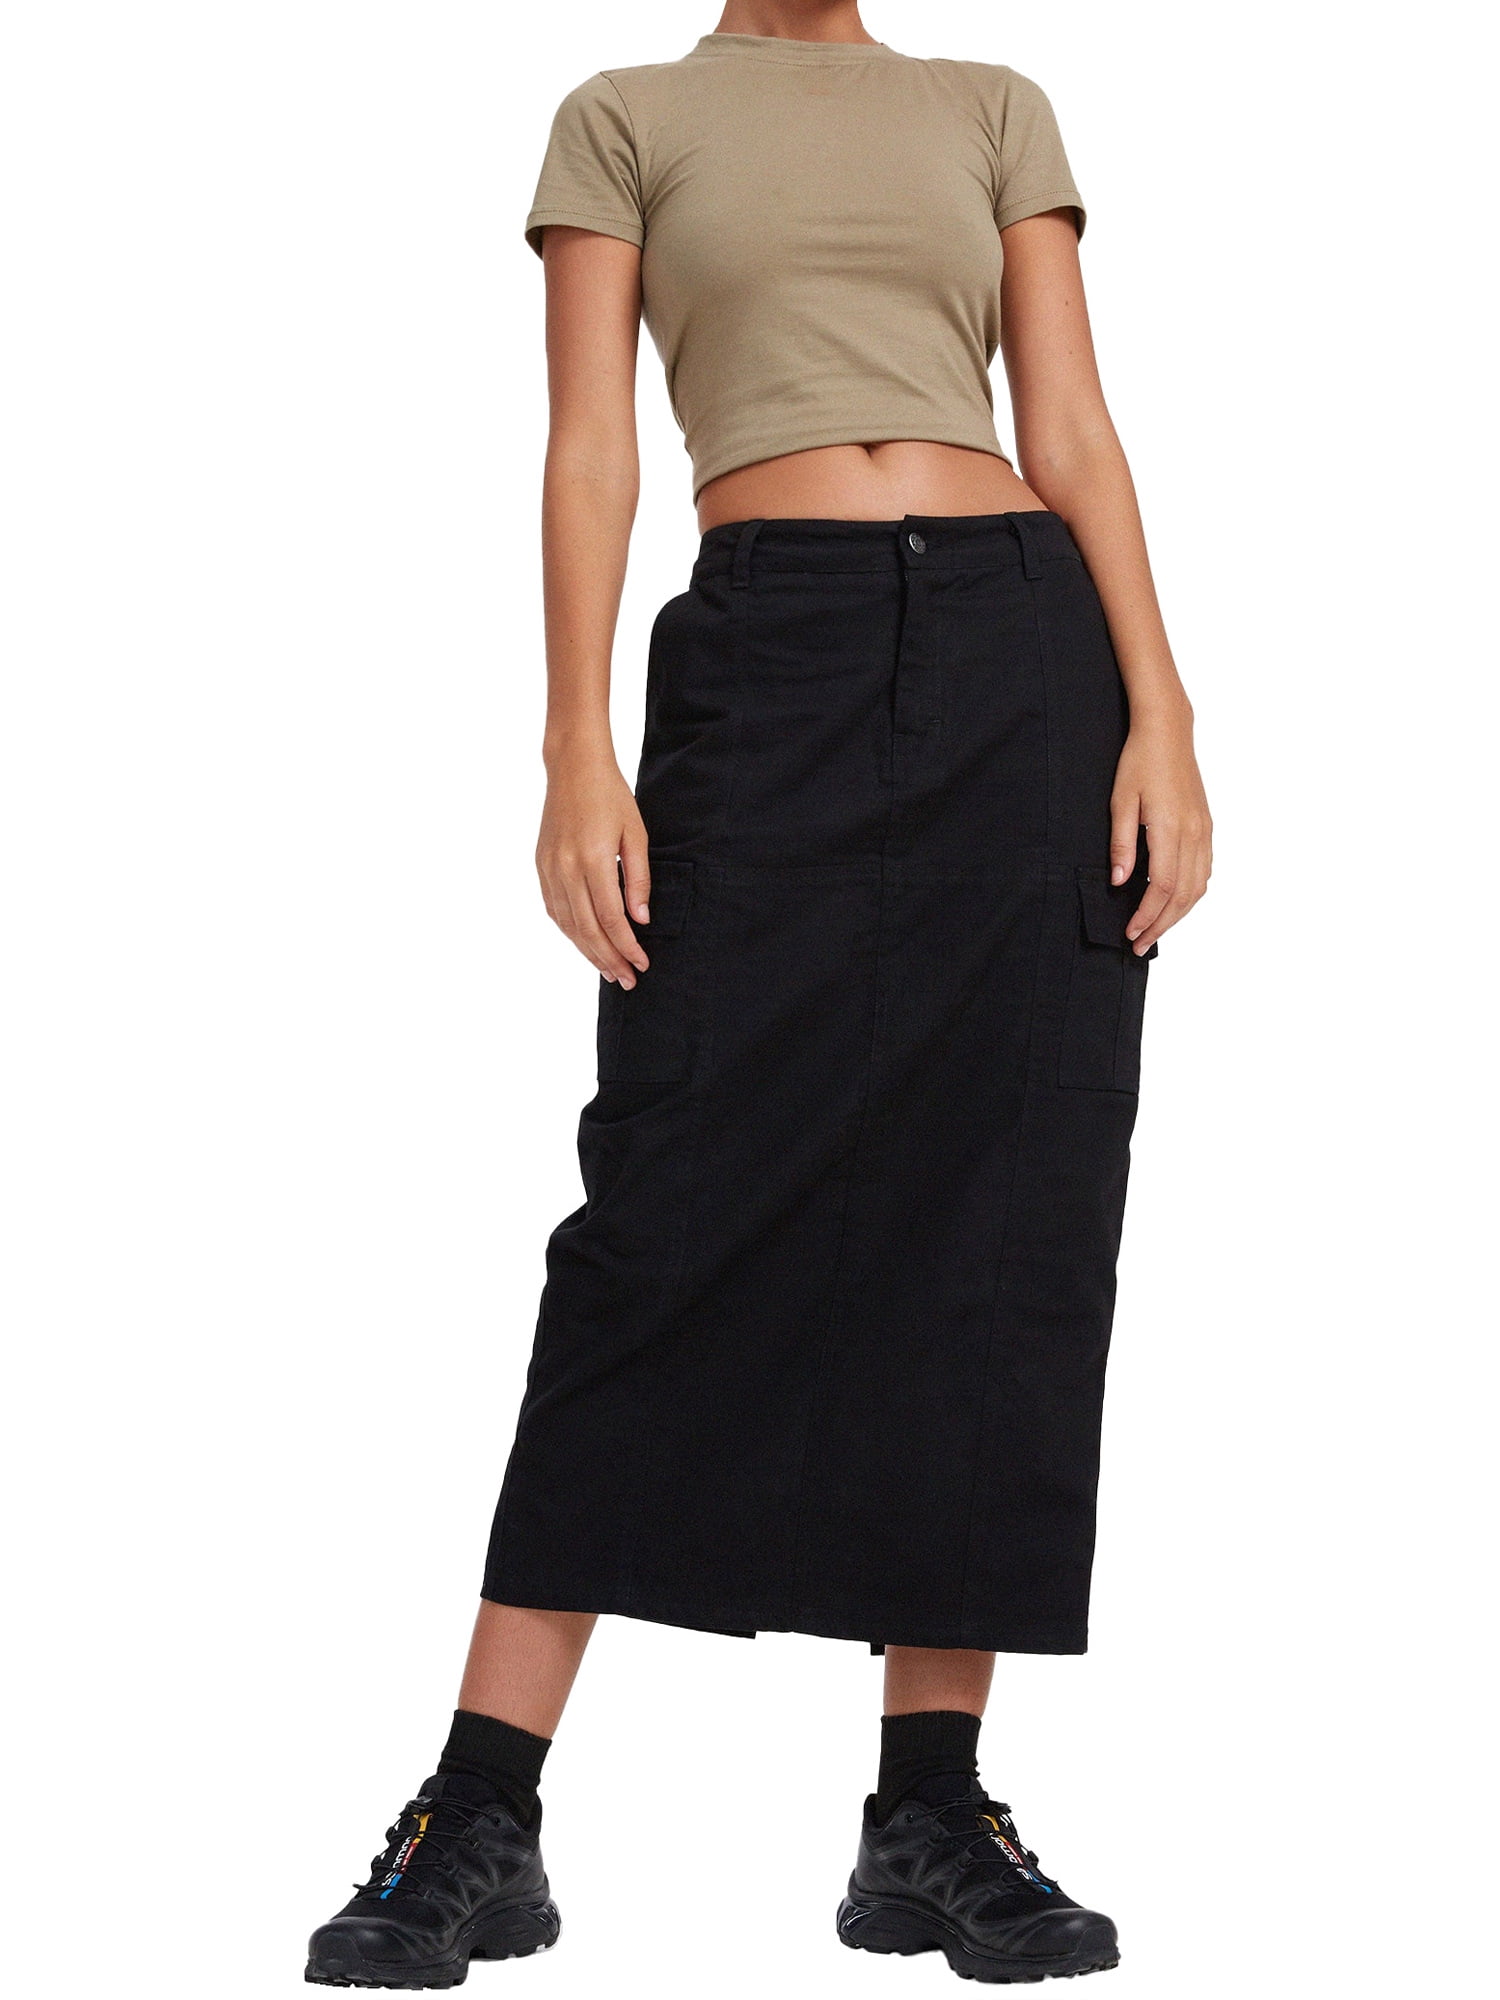 Tempura Women Summer Long Skirt, Adults Casual Solid Color Zipper Skirt ...